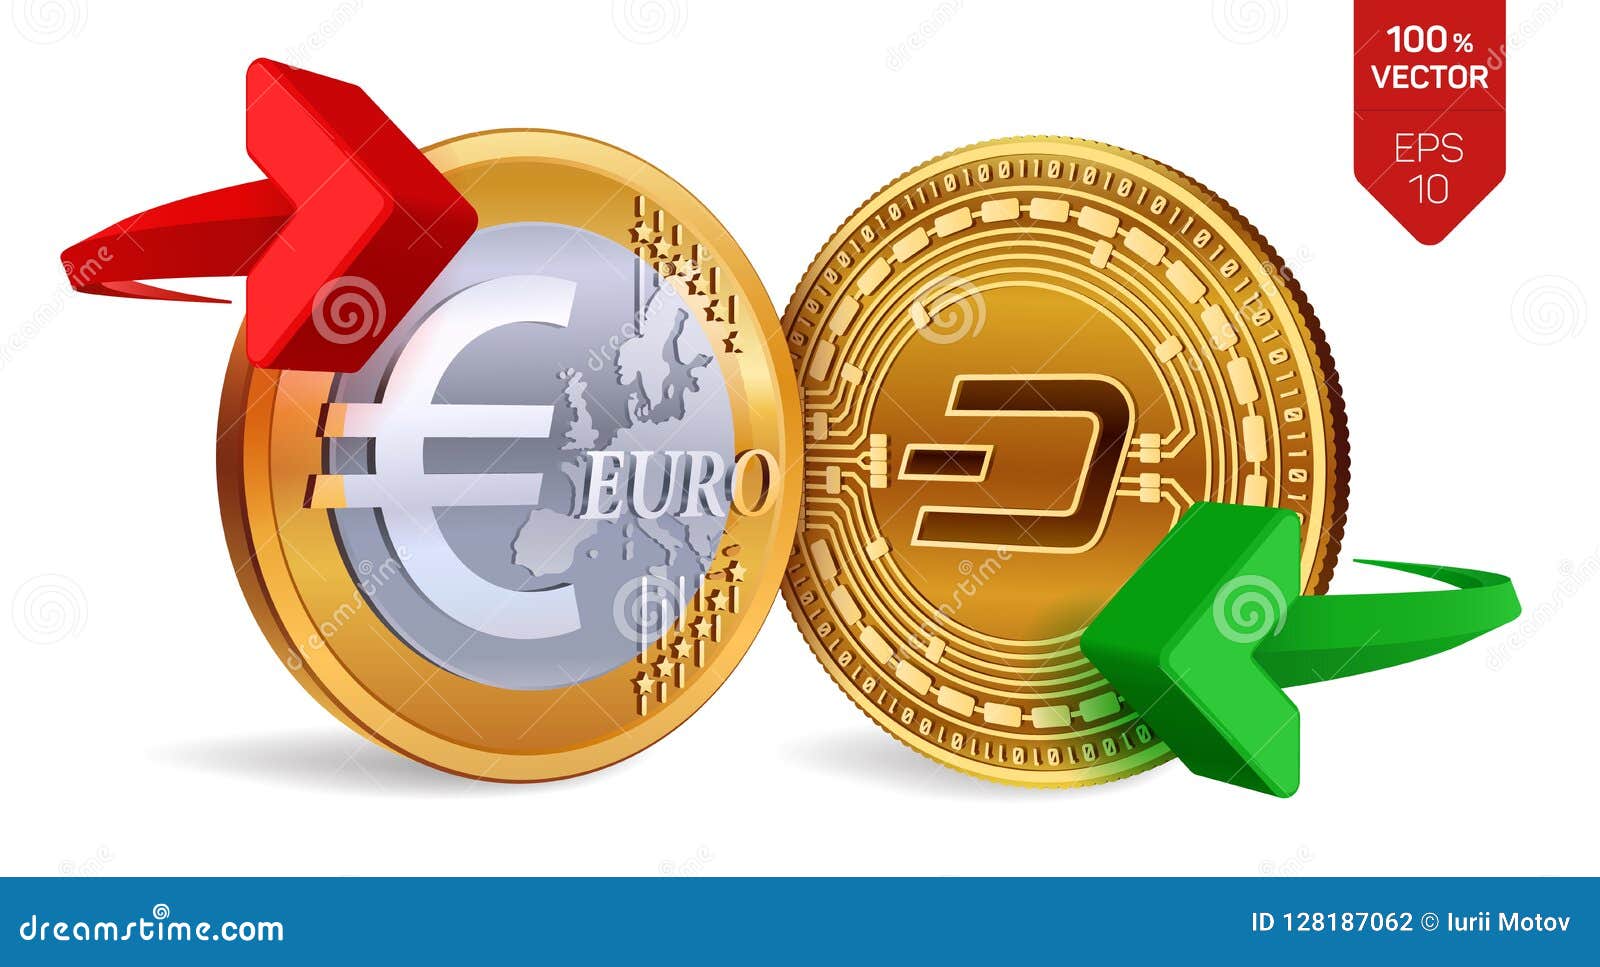 crypto euro coin